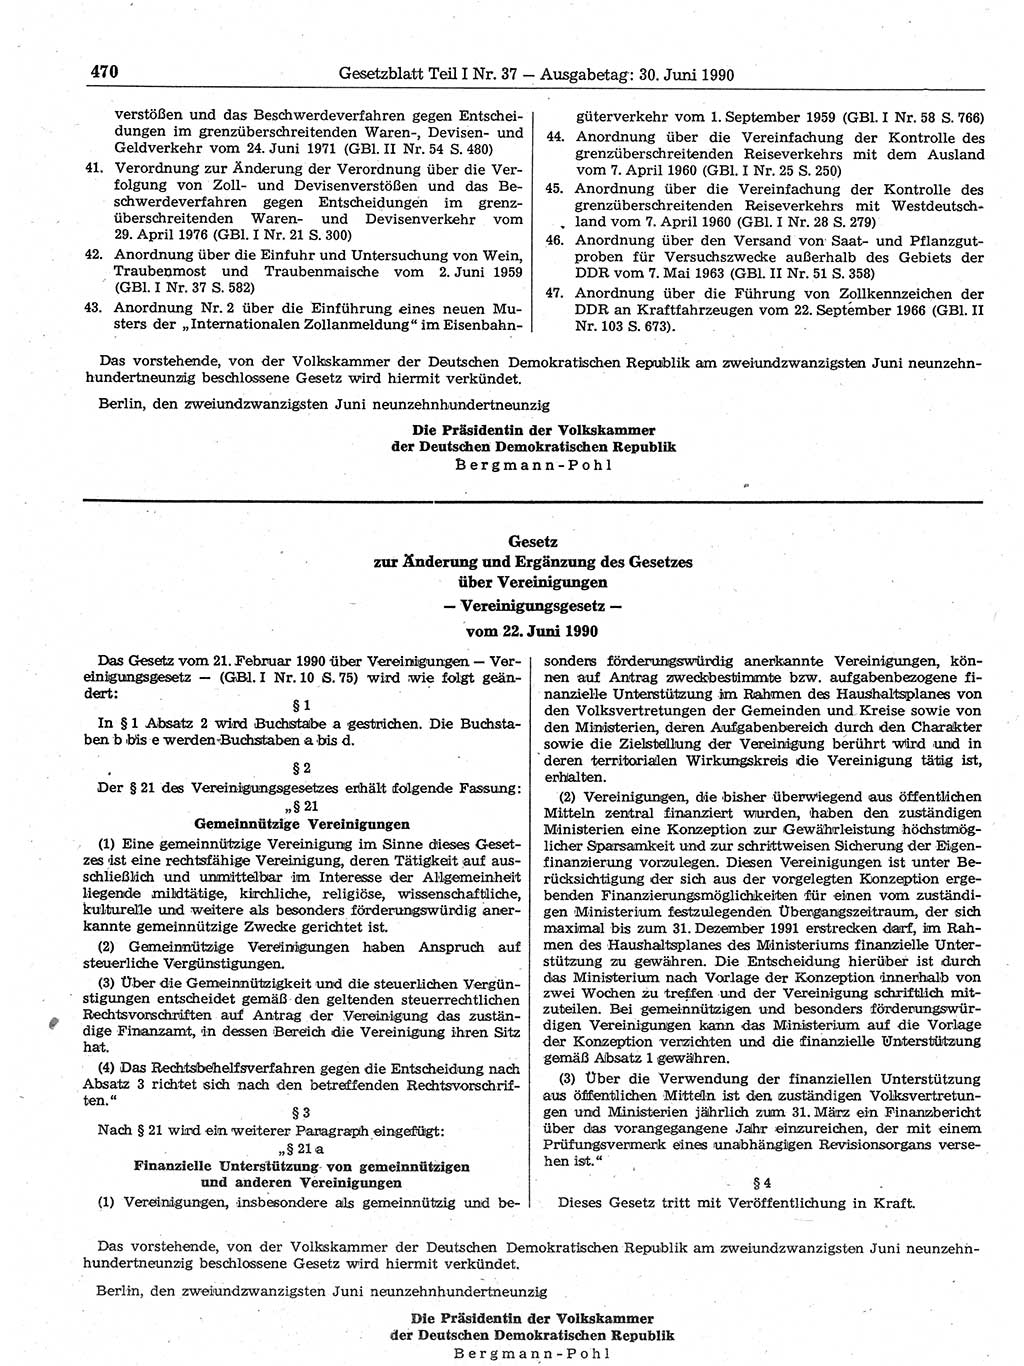 Gesetzblatt (GBl.) der Deutschen Demokratischen Republik (DDR) Teil Ⅰ 1990, Seite 470 (GBl. DDR Ⅰ 1990, S. 470)